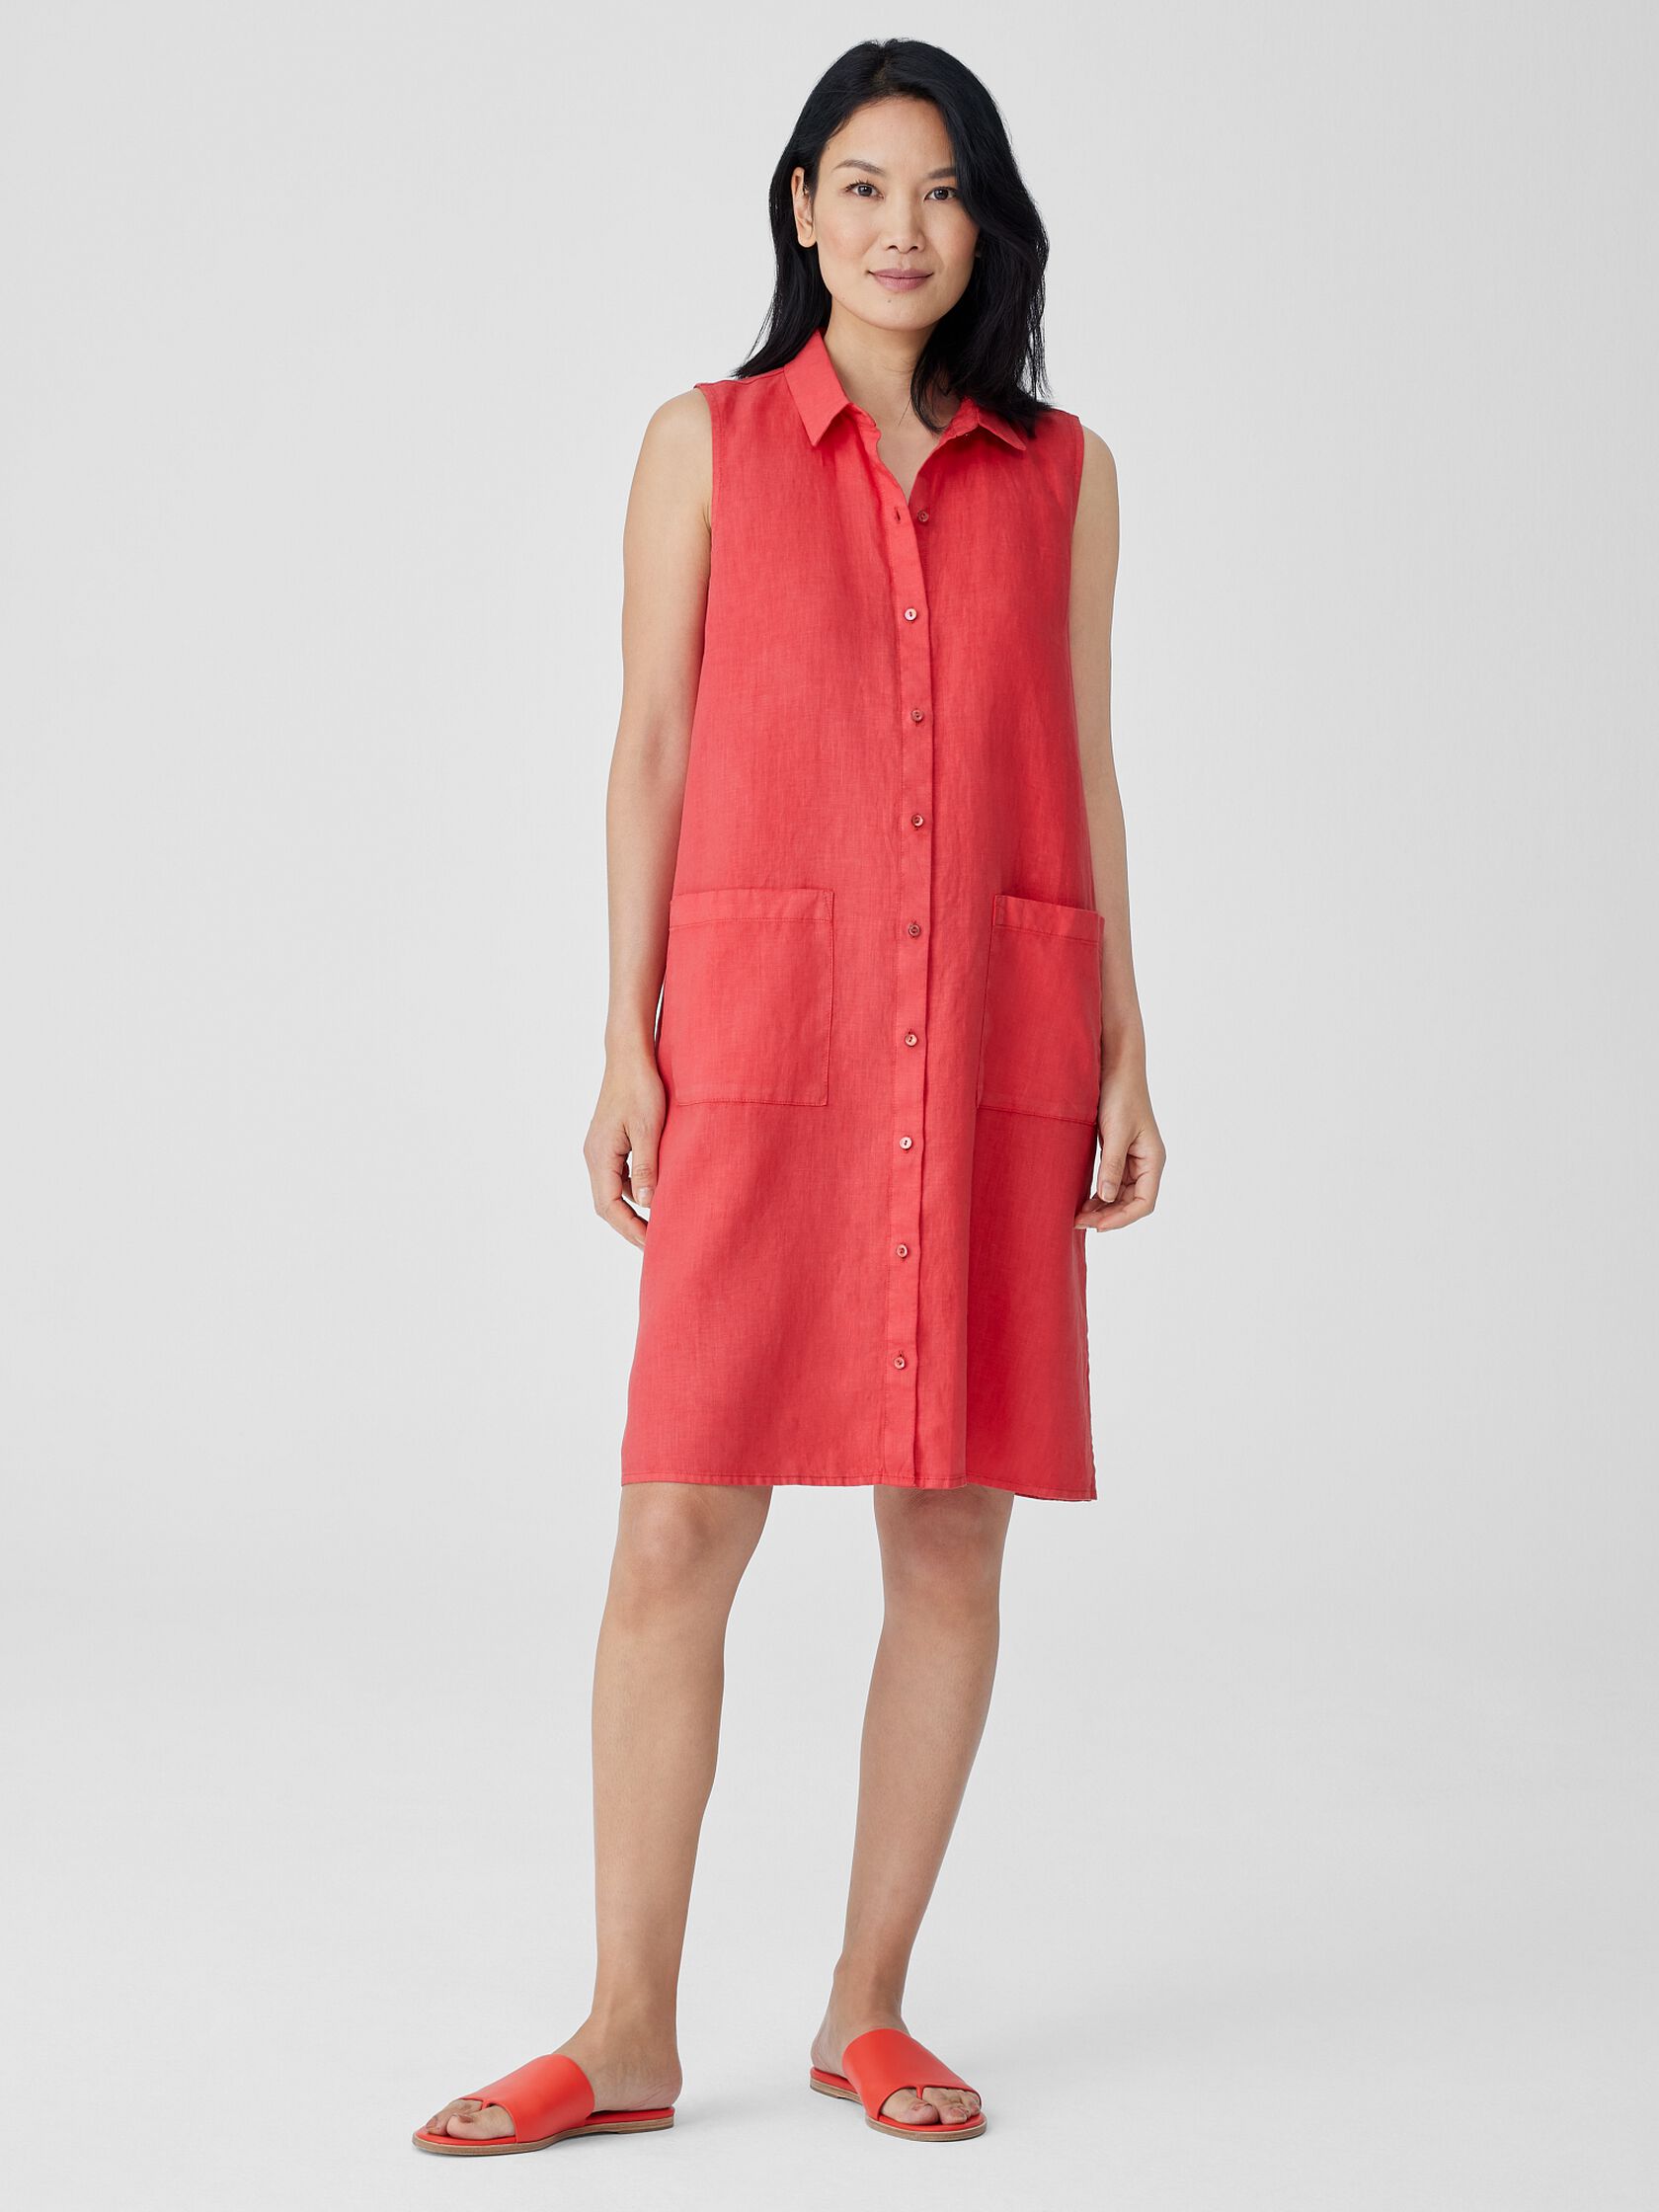 Organic linen shirt-collar dress, Contemporaine